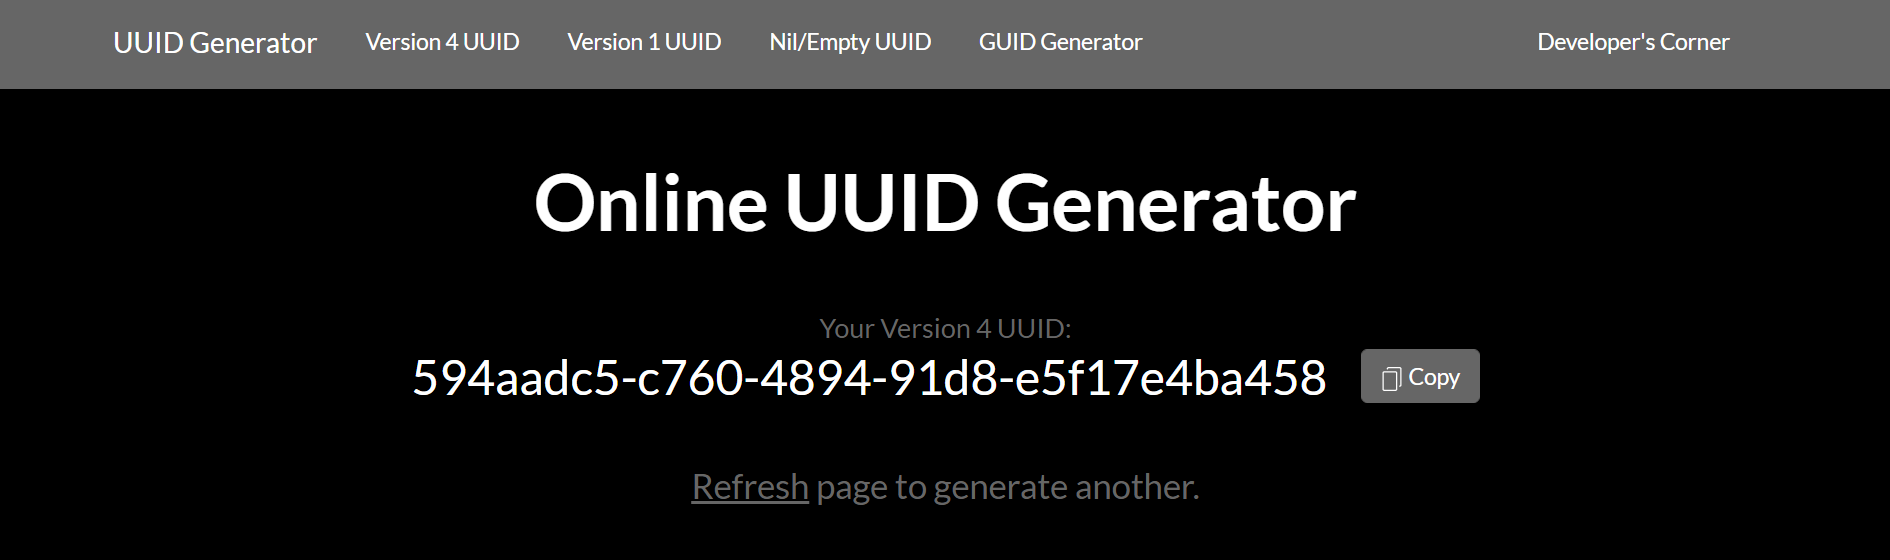 生成自定义 UUID 的 UUIDGenerator.net 主屏幕图像